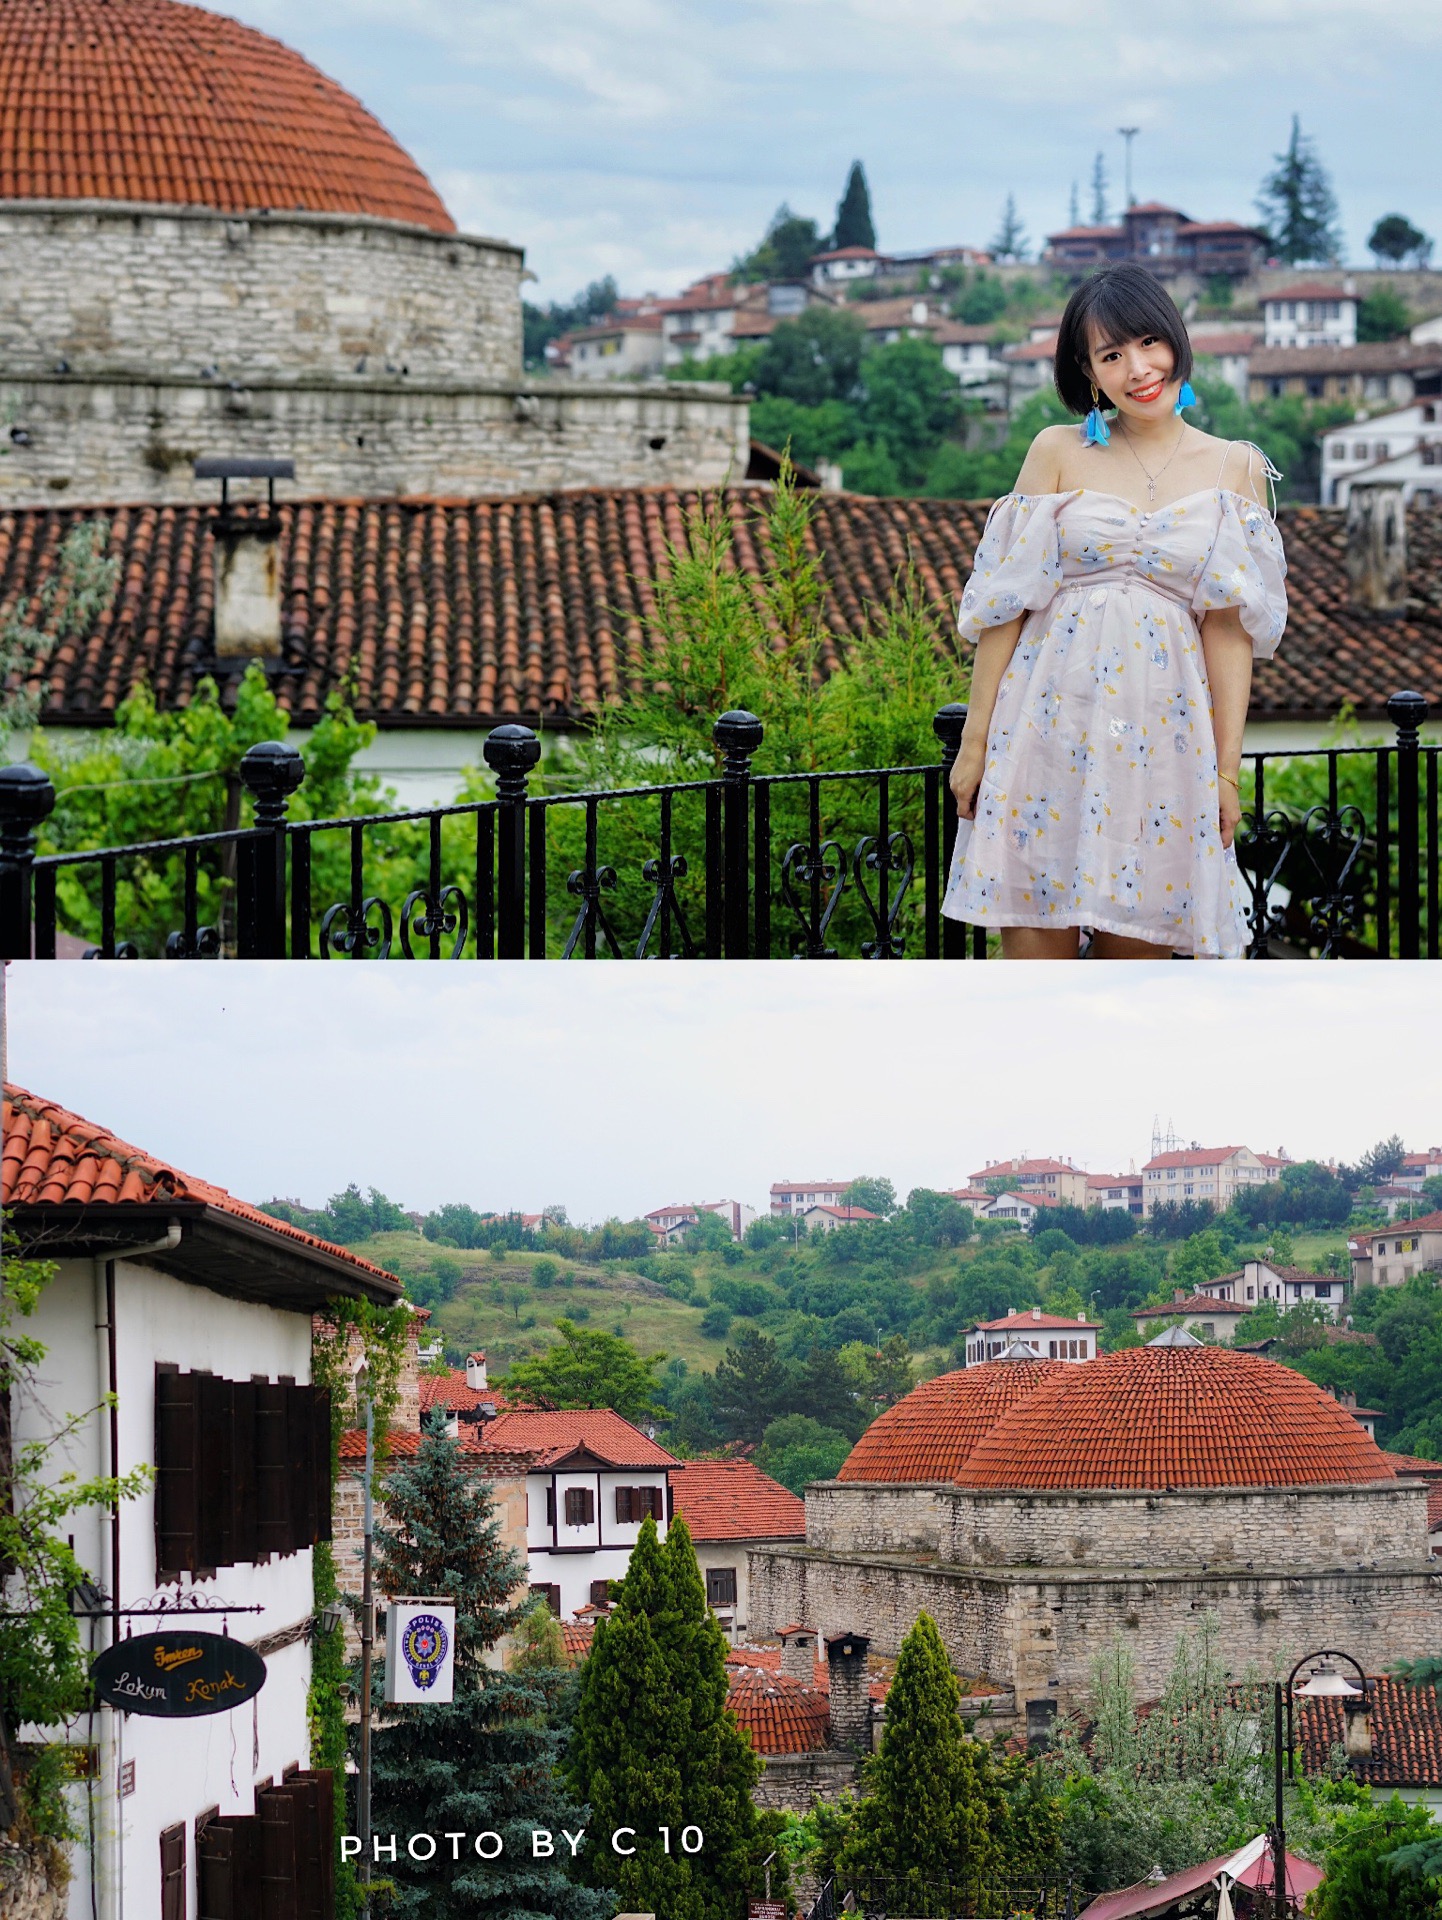 番红花城是位于土耳其安纳托利亚中部的城镇，离伊斯坦布尔有7，8小时的车程。老城区的鄂图曼时期的房屋和